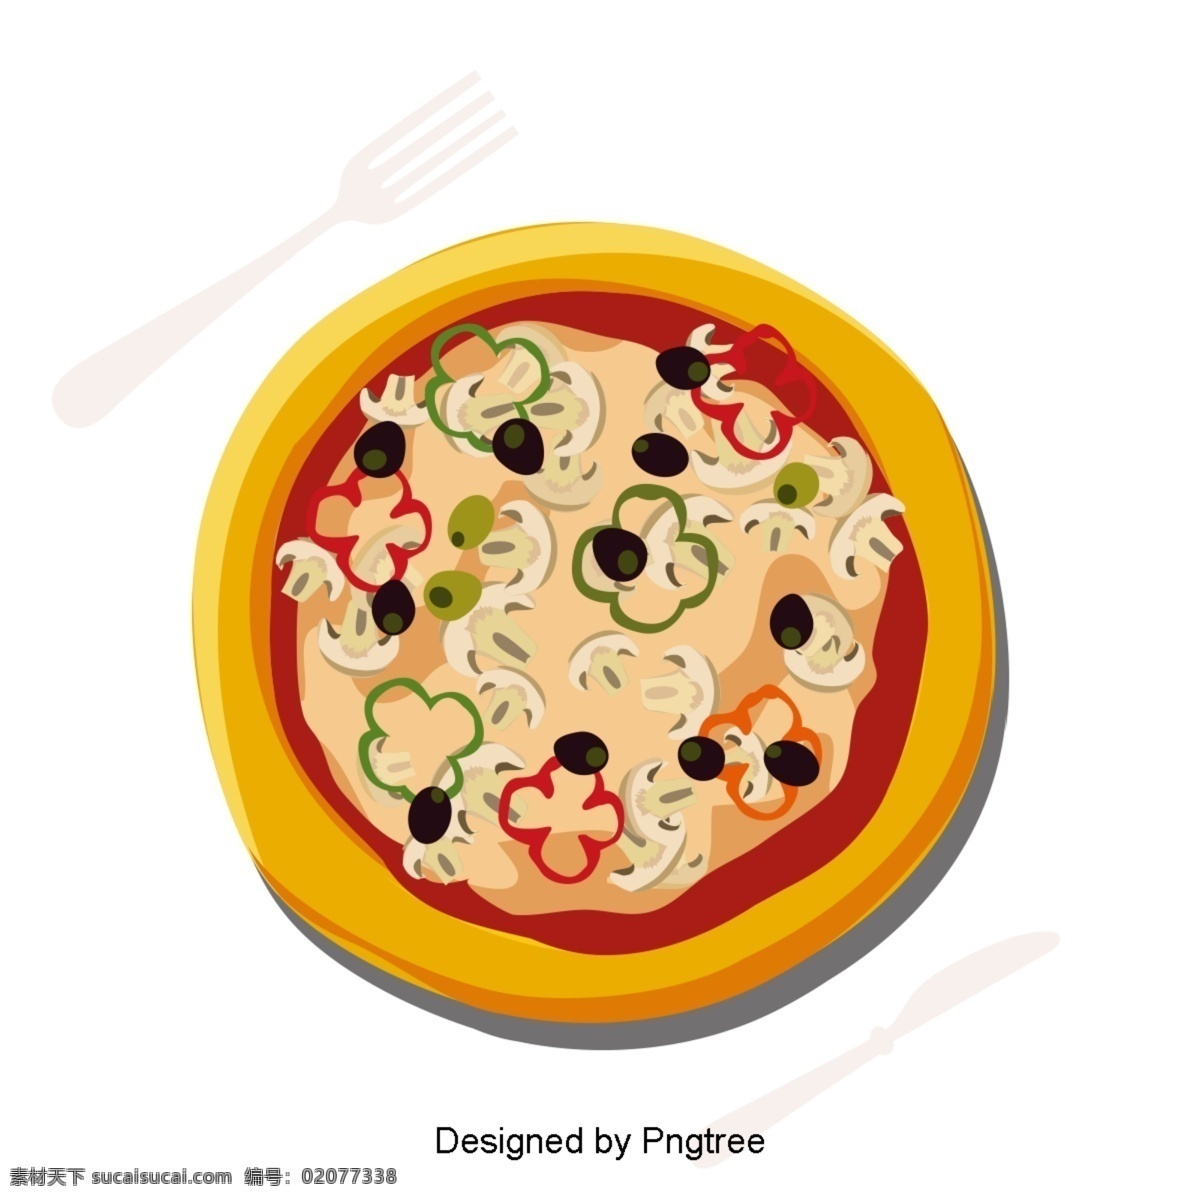 漂亮 的卡 通 可爱 手绘 美味 西餐 比萨饼 外卖 卡通 创意 食物 披萨 塔克